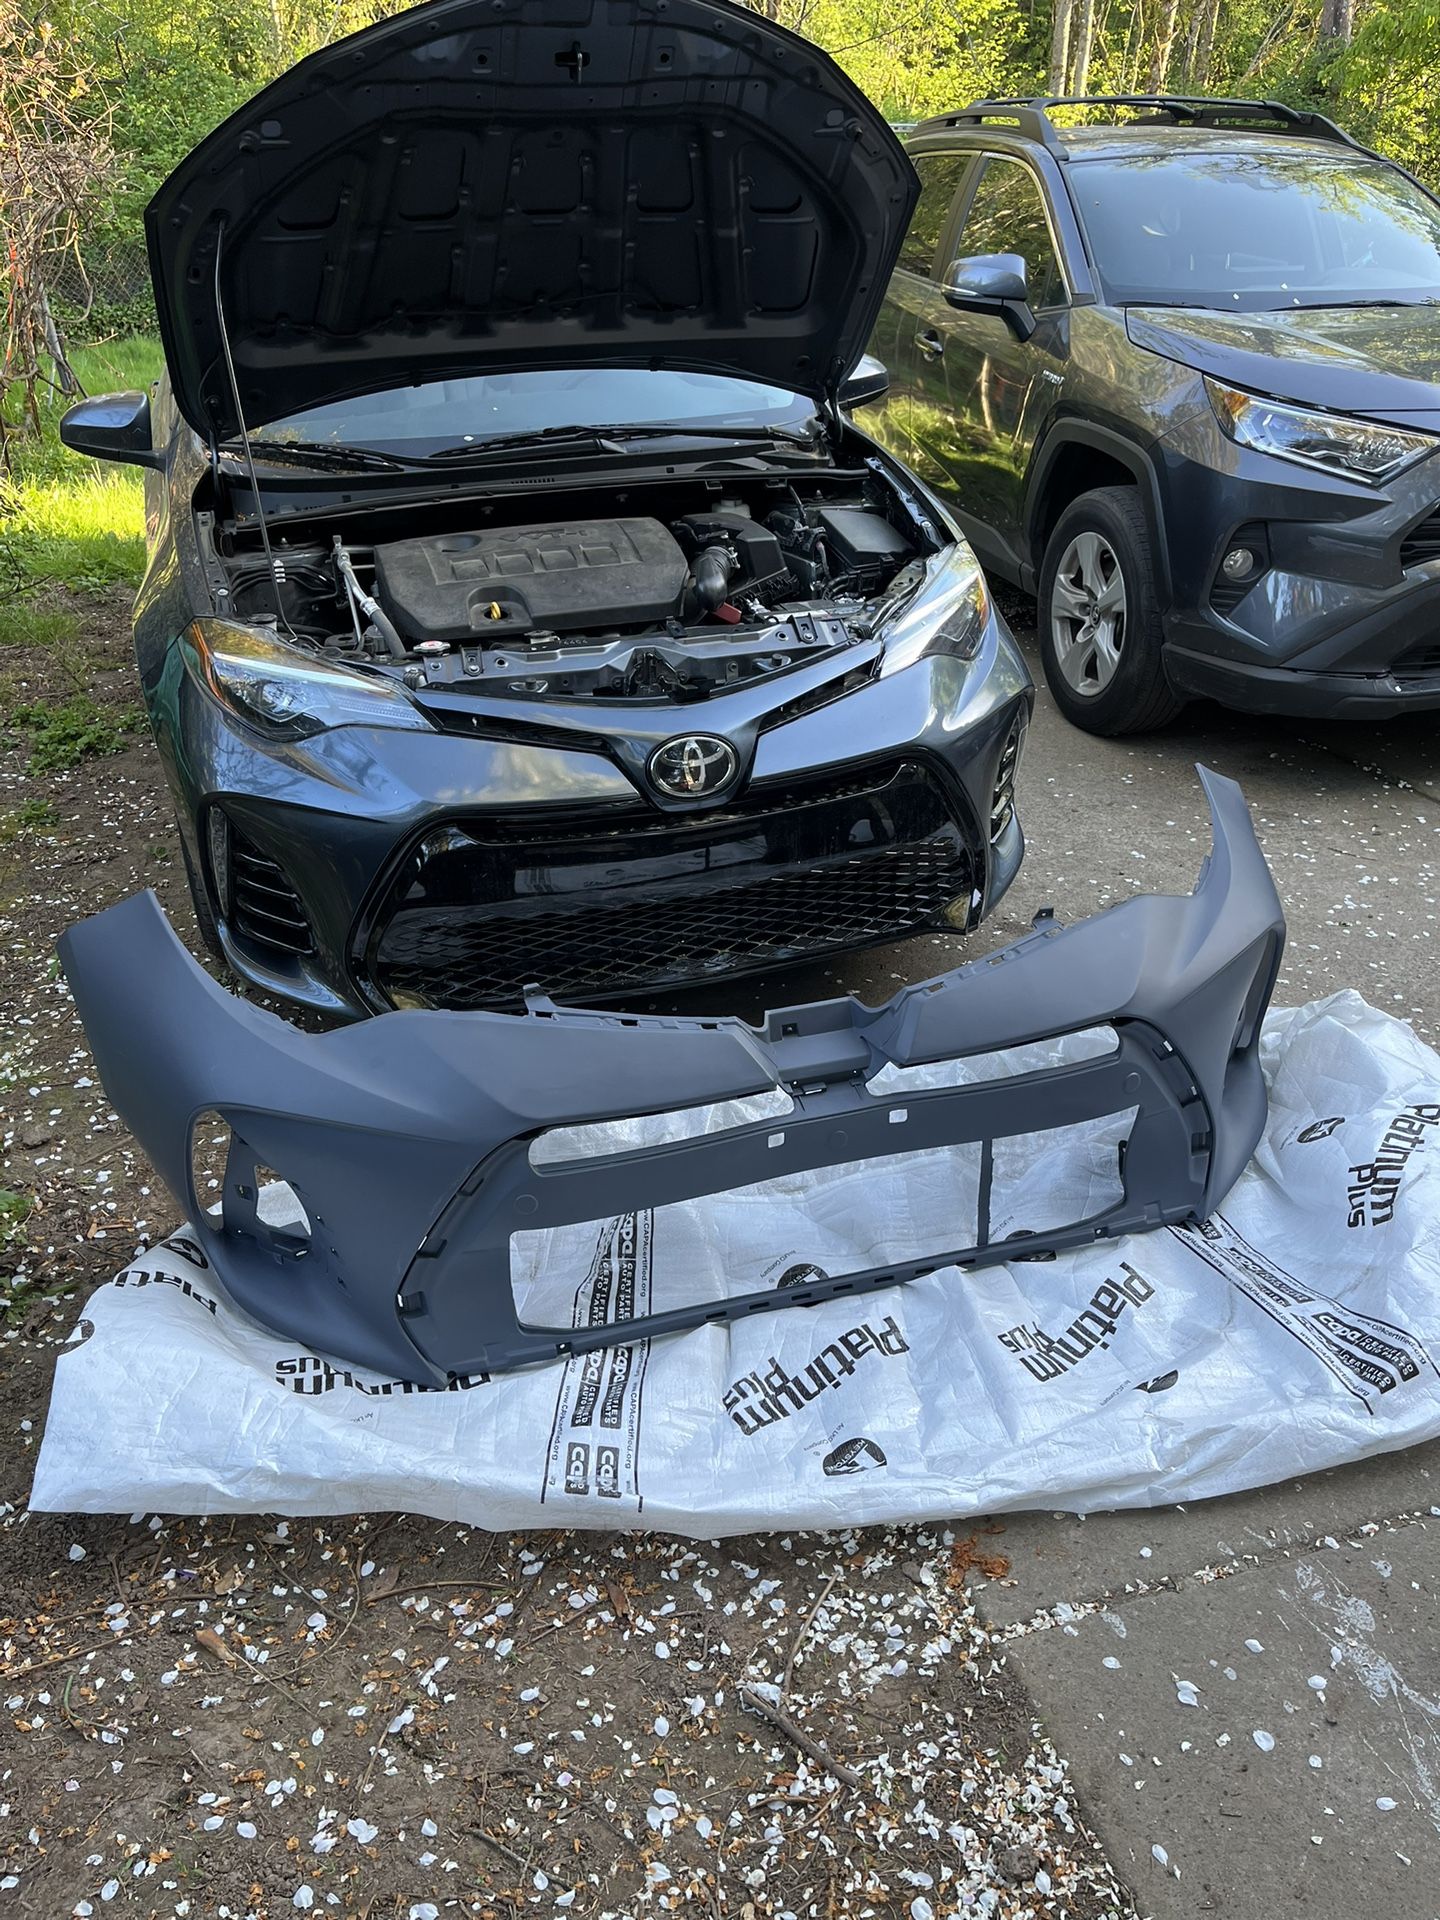 2019 Toyota Corolla Bumper Cover